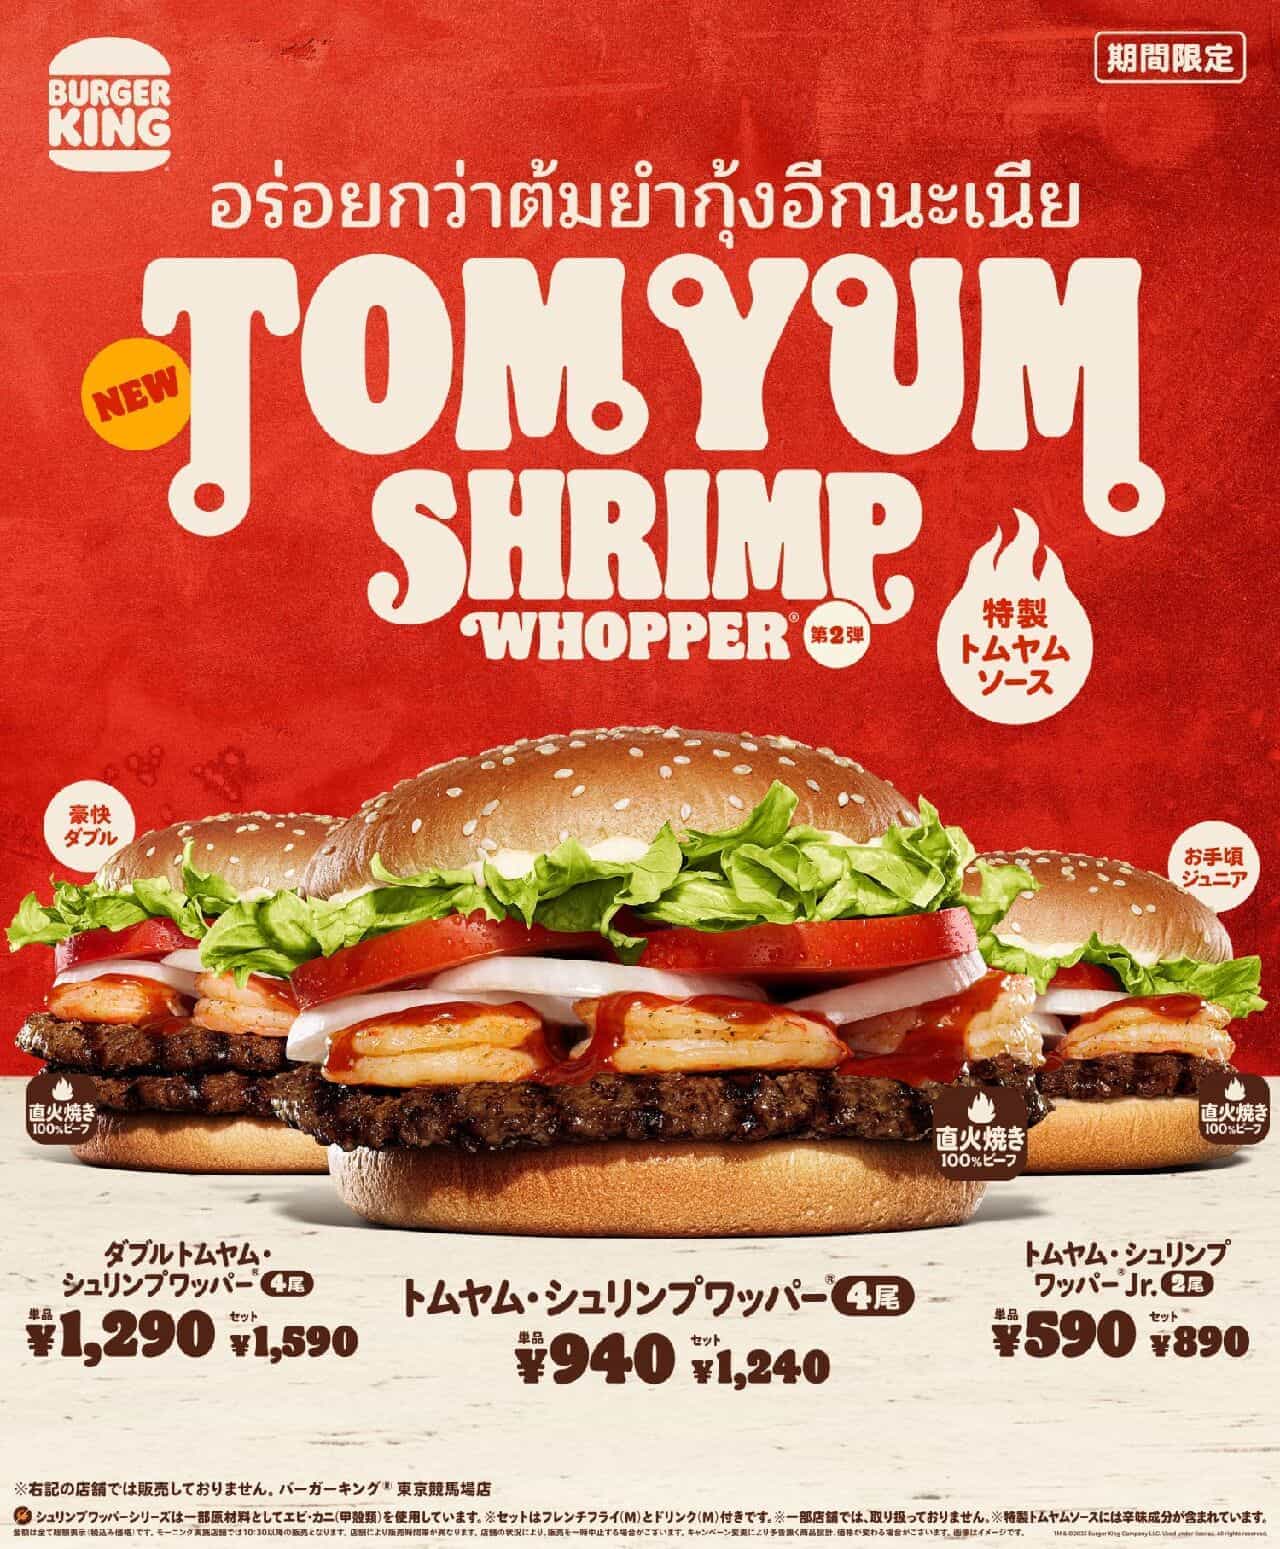 Burger King "Tom Yum Shrimp Whopper", "Double Tom Yum Shrimp Whopper", "Tom Yum Shrimp Whopper Jr.